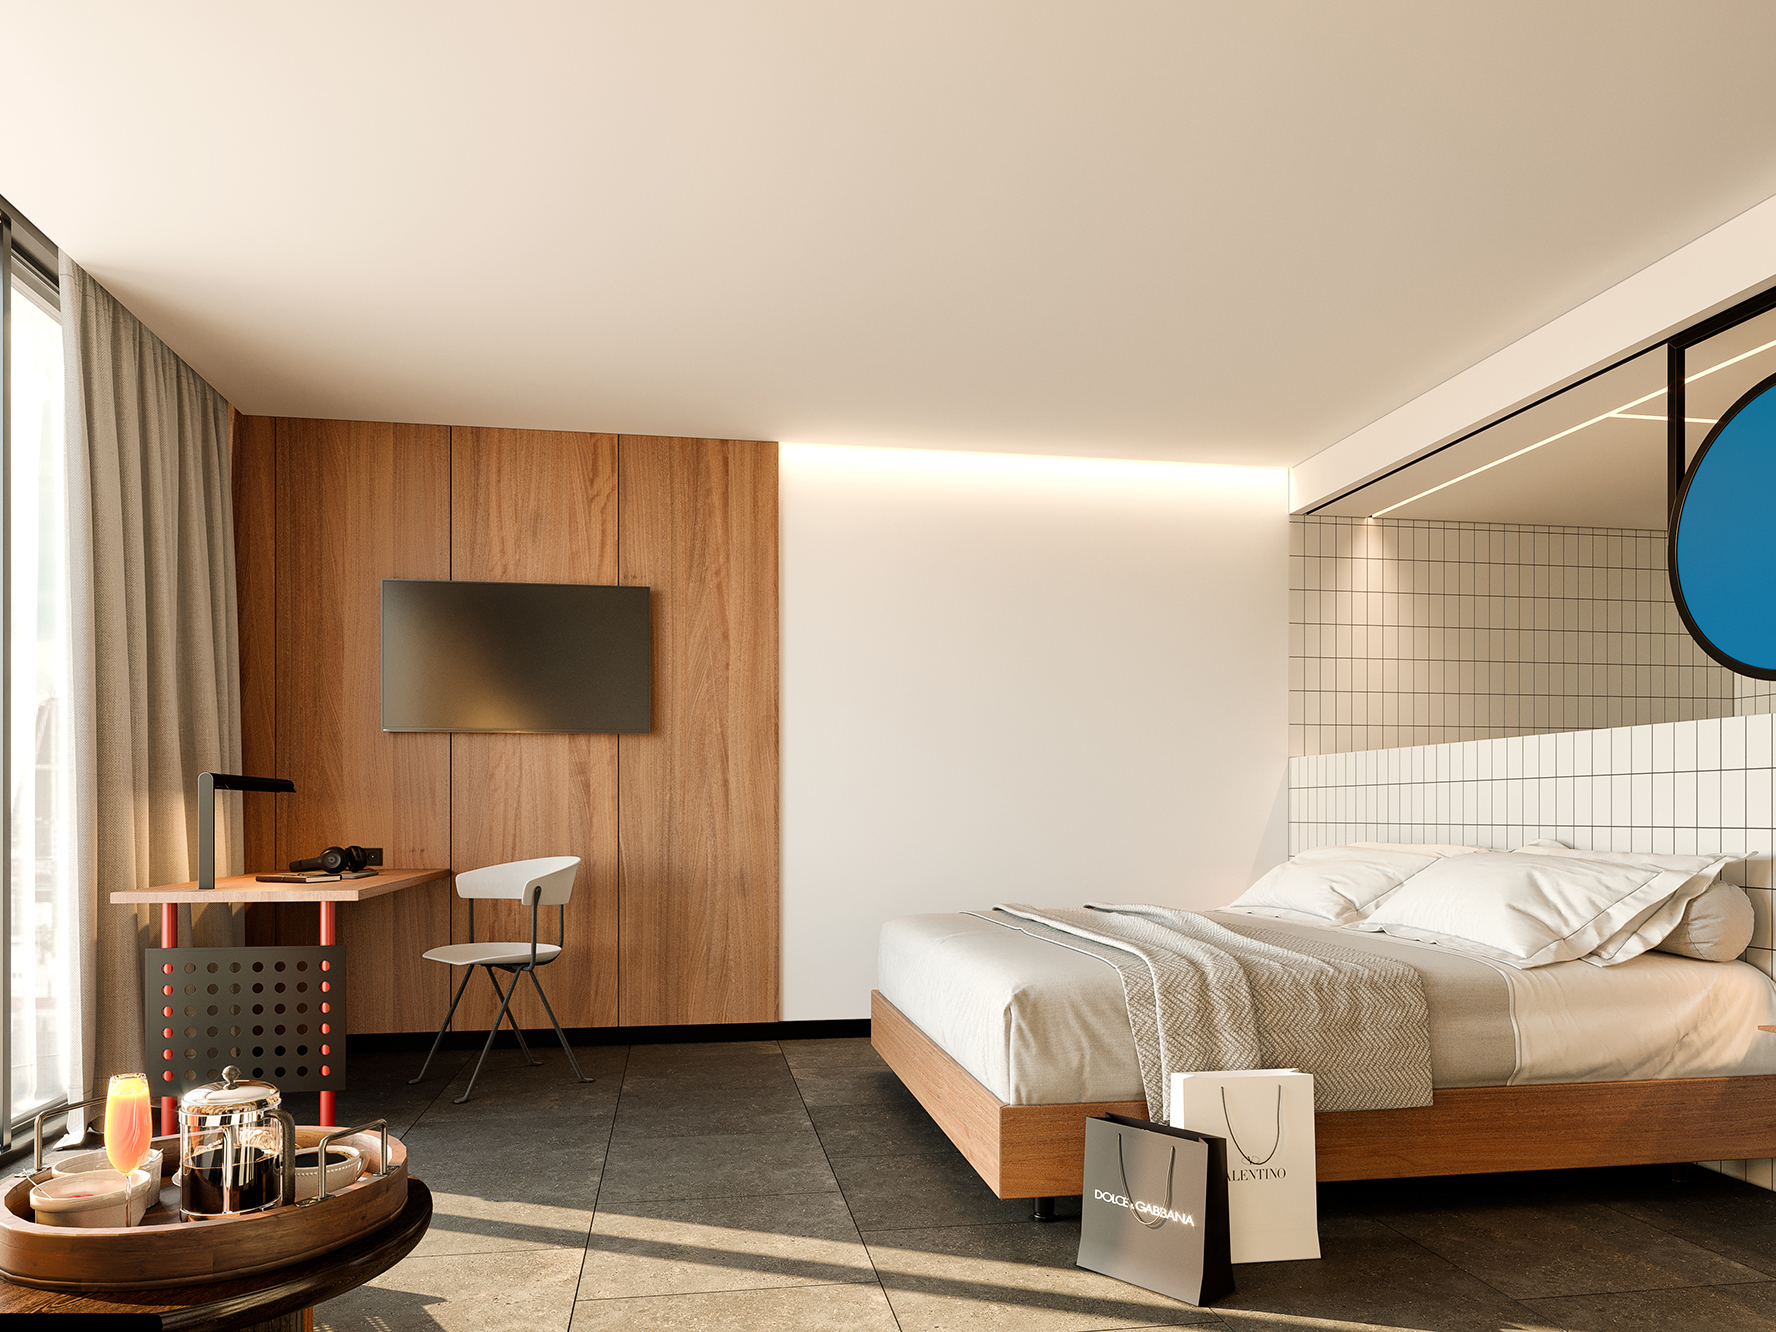 boutique hotel interior design ideas